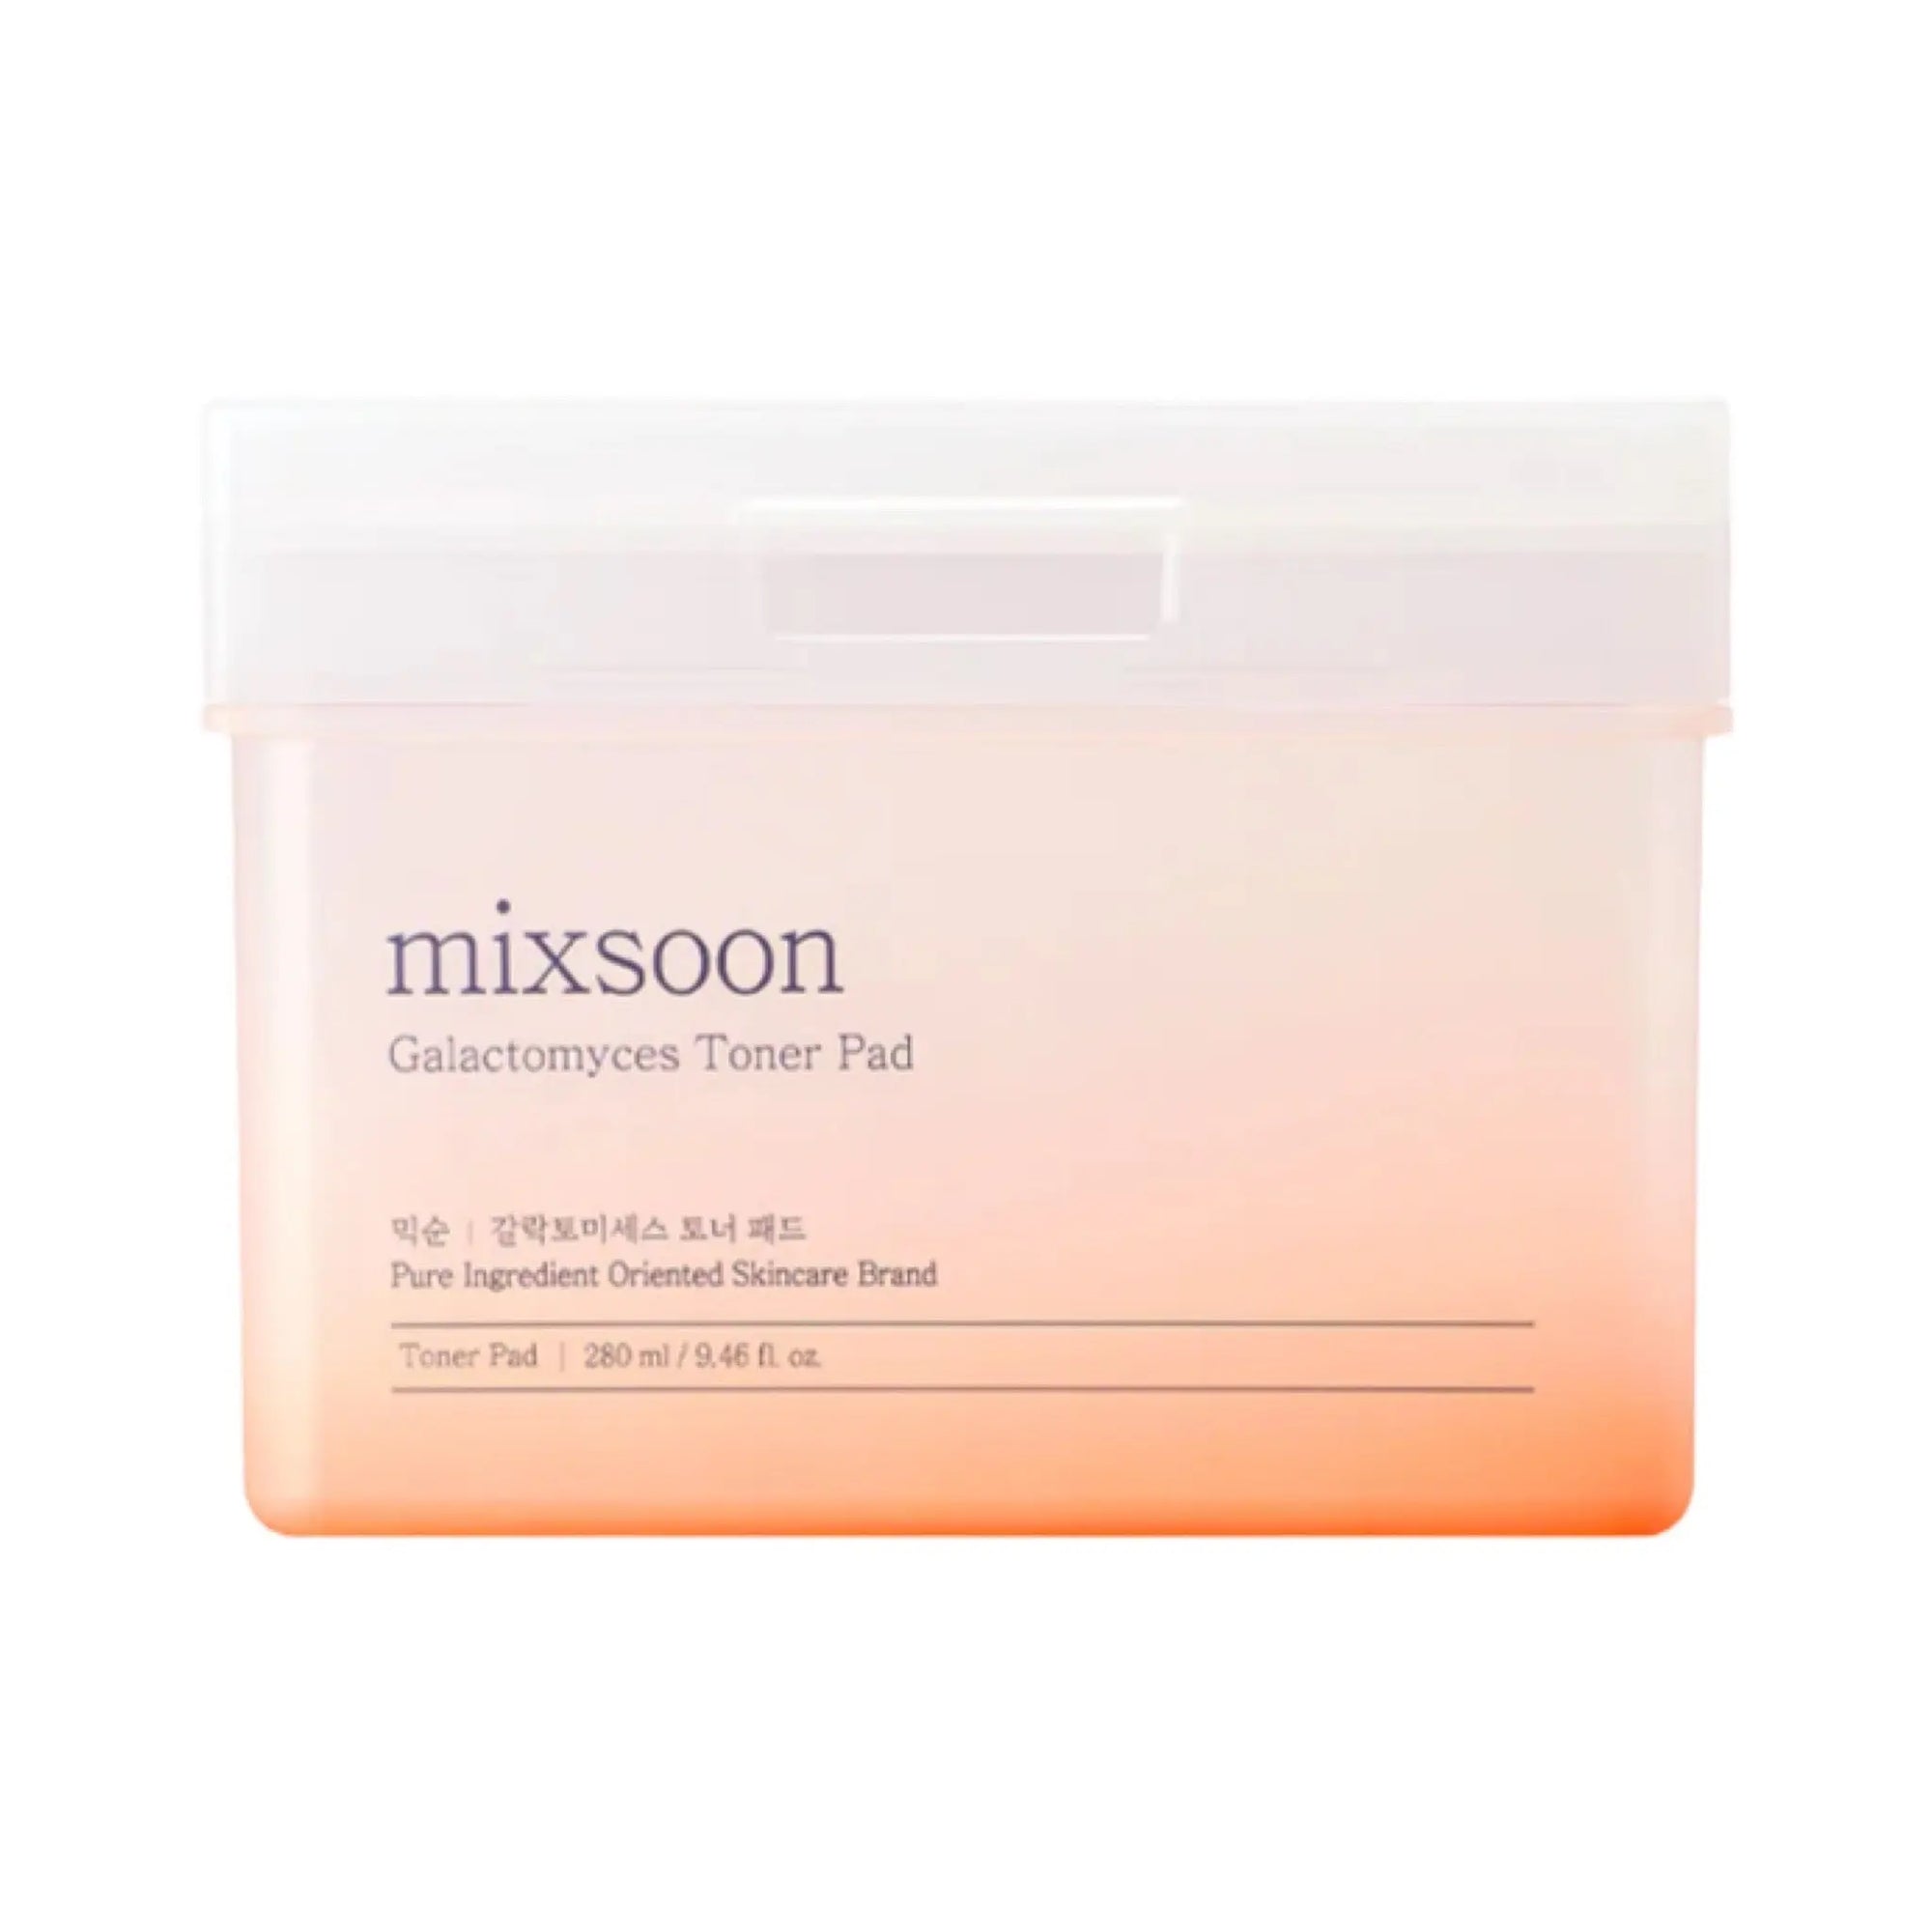 Mixsoon - Galactomyces Toner Pad (60 Sheets) 280mL Mixsoon